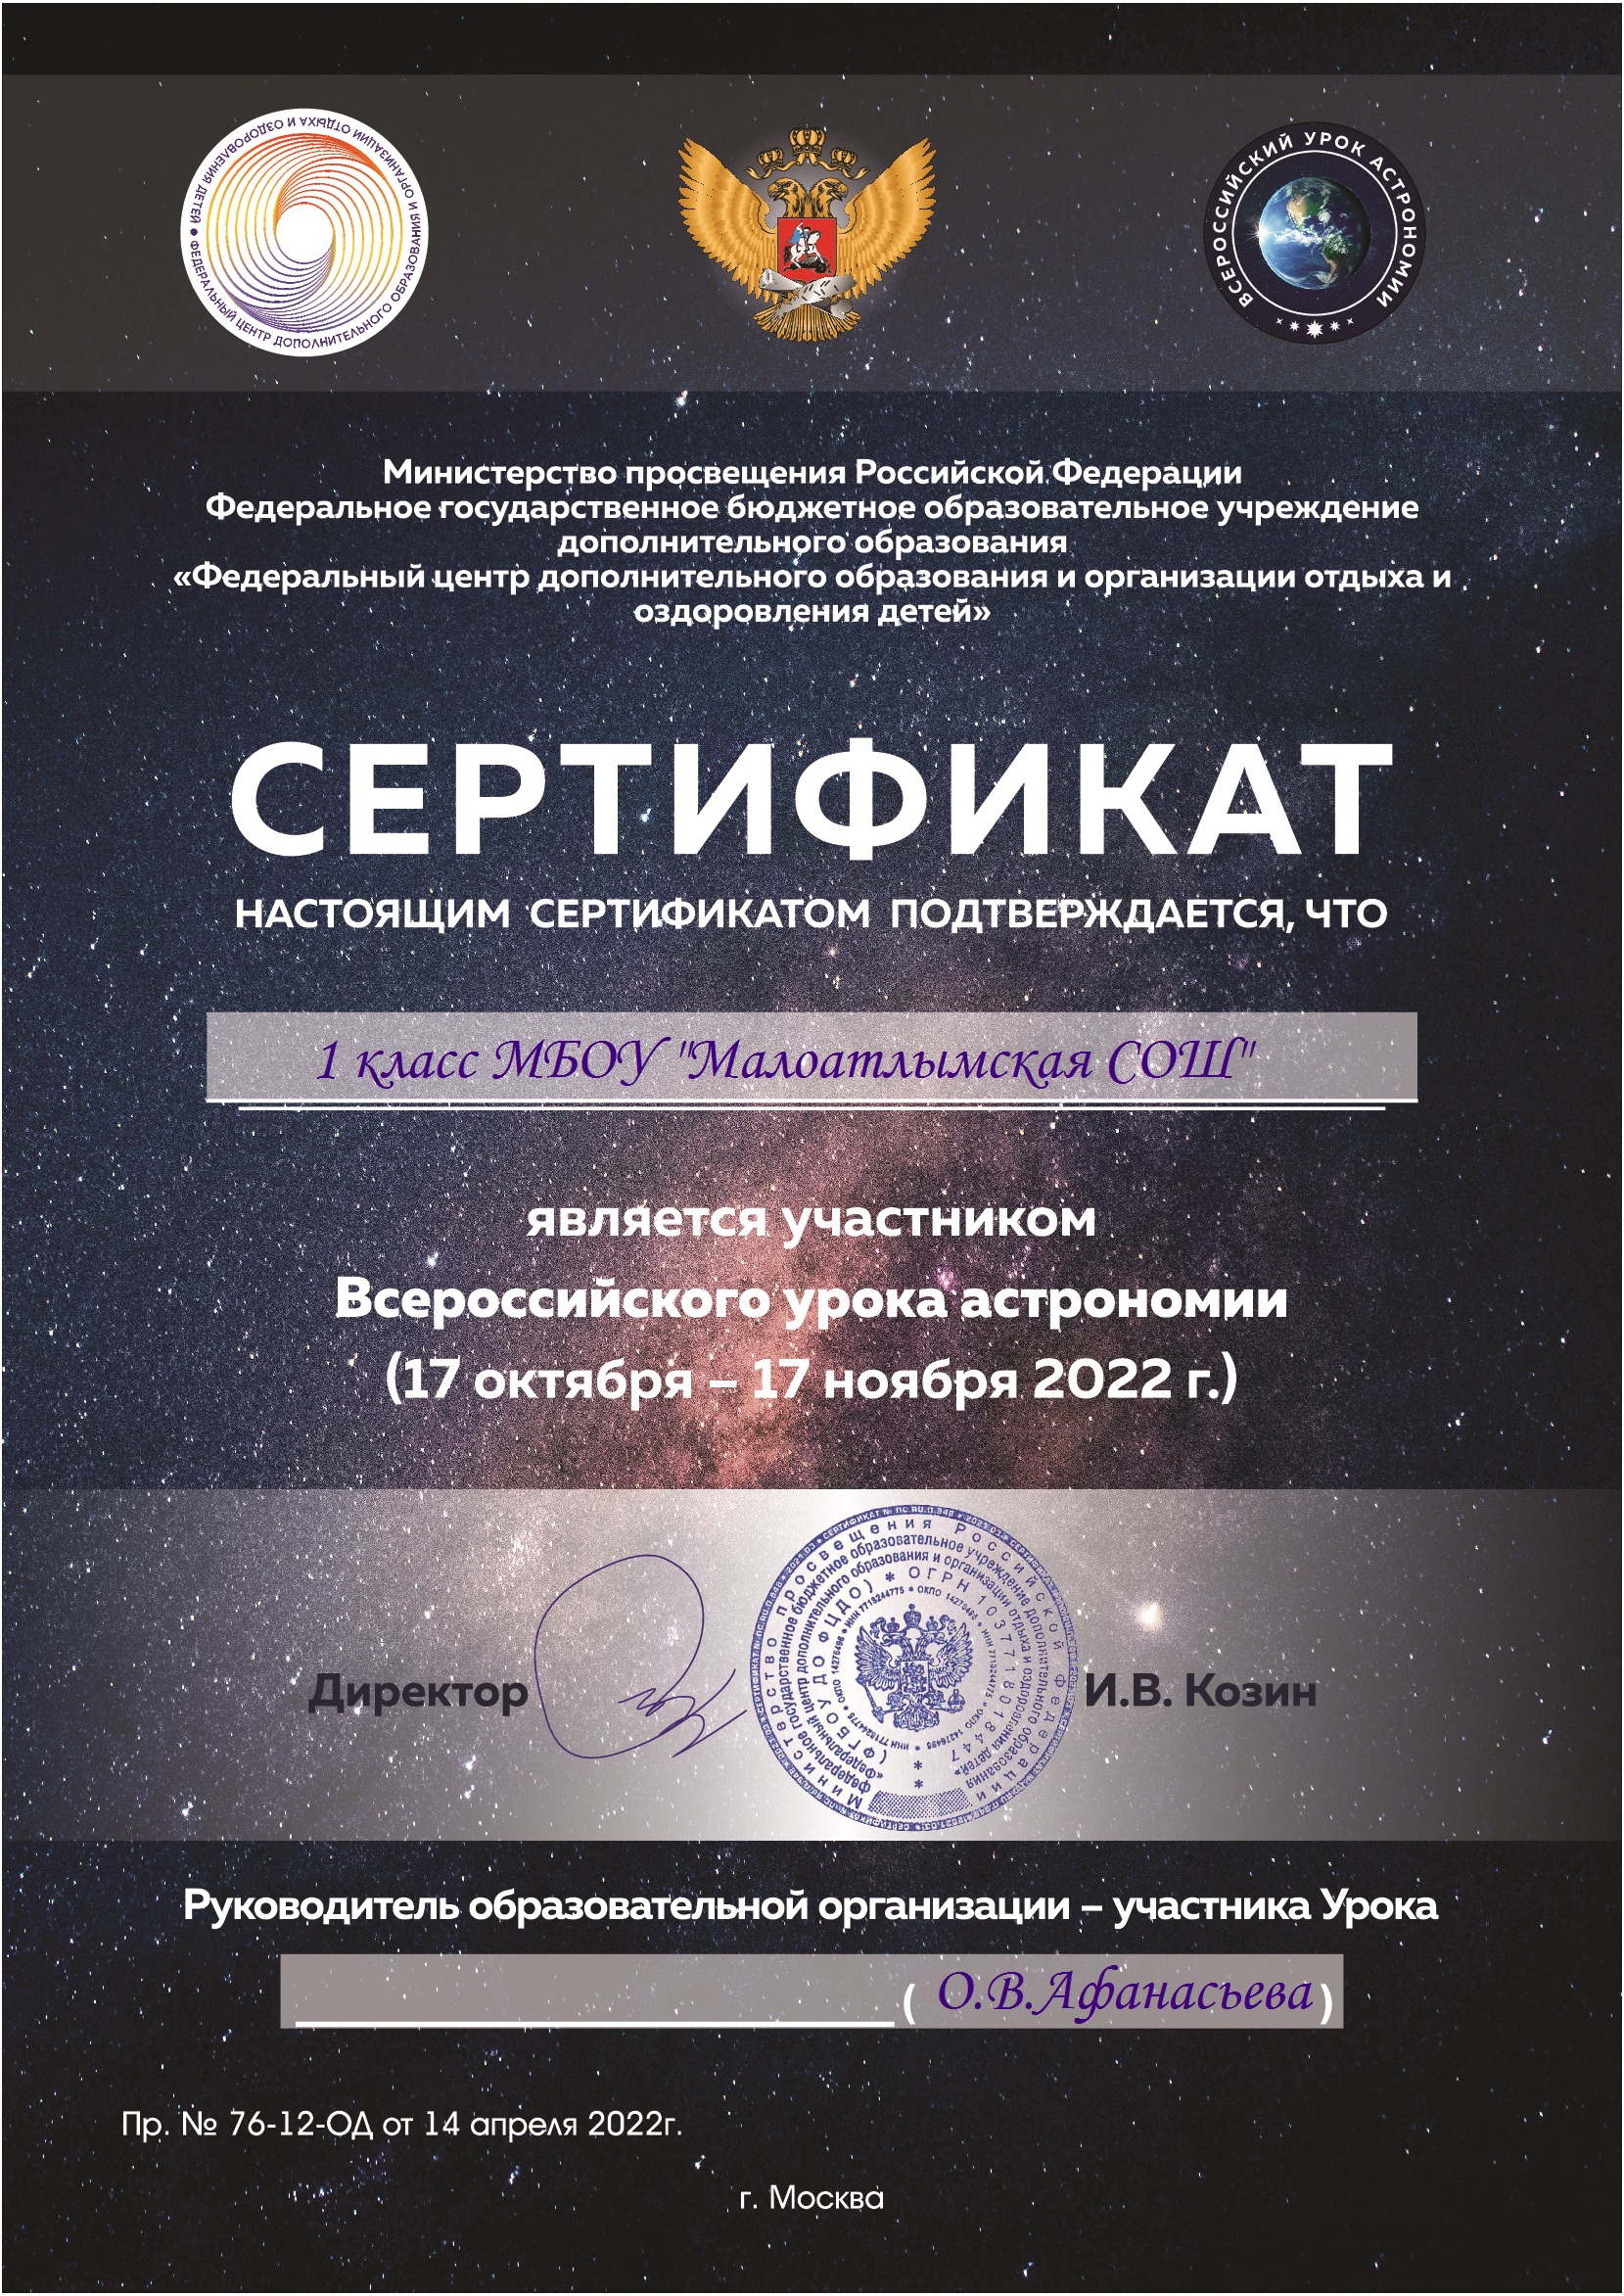 Всероссийский урок астрономии «Космическое приключение».